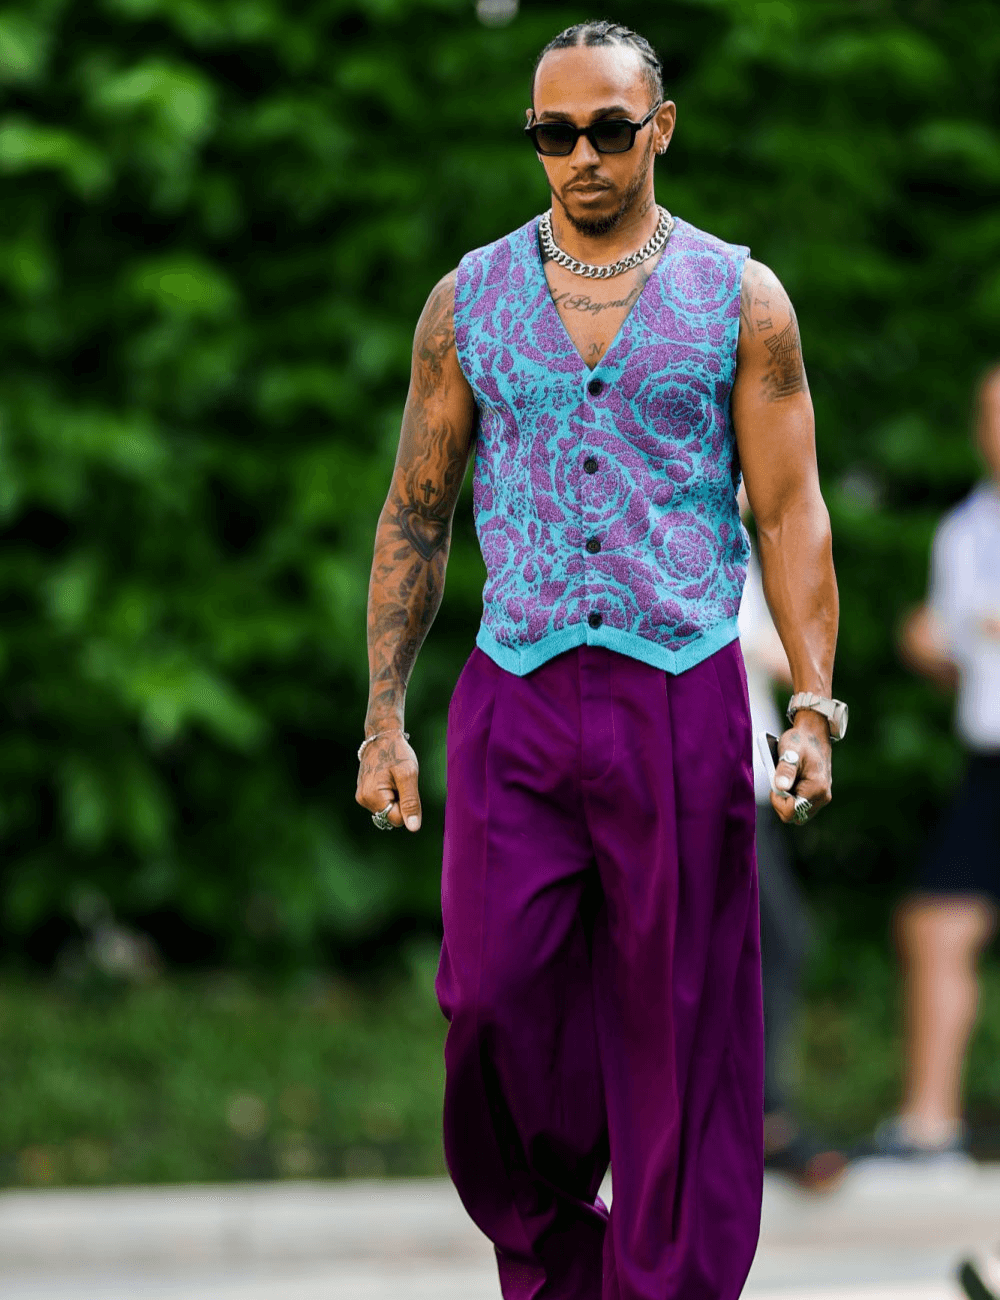 Lewis Hamilton - calça roxa e colete estampado roxo com azul - Lewis Hamilton - verão - homem negro andando na rua usando óculos de sol - https://stealthelook.com.br